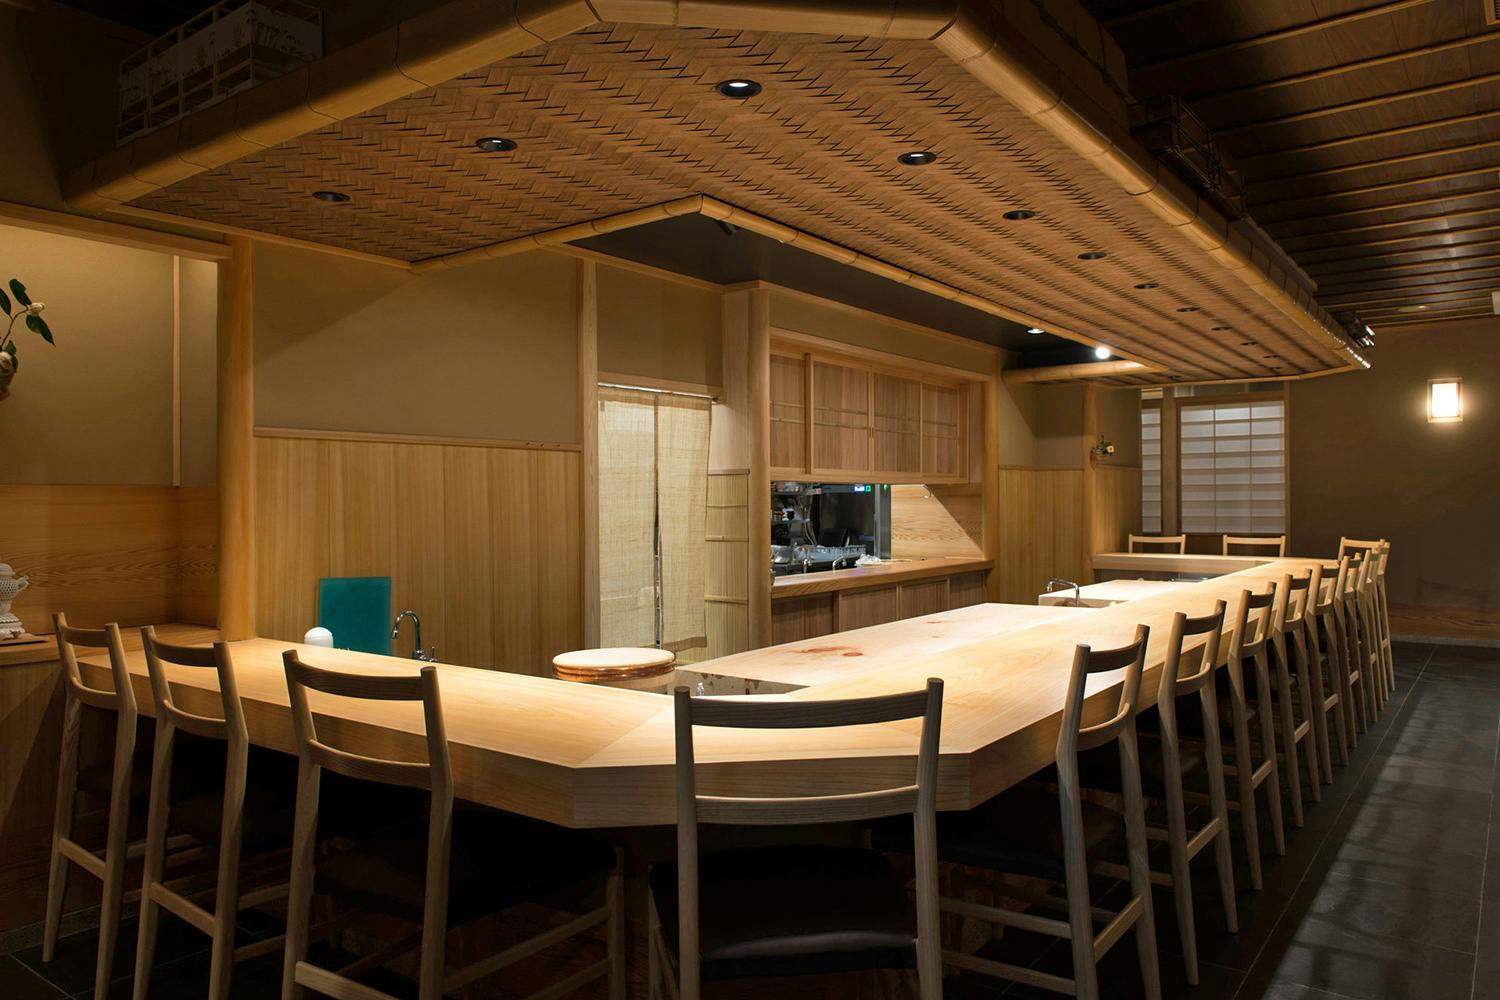 四谷三丁目の個室があるグルメ レストラン45選 居心地が良い空間が大切なお時間を演出 Okaimonoモール レストラン